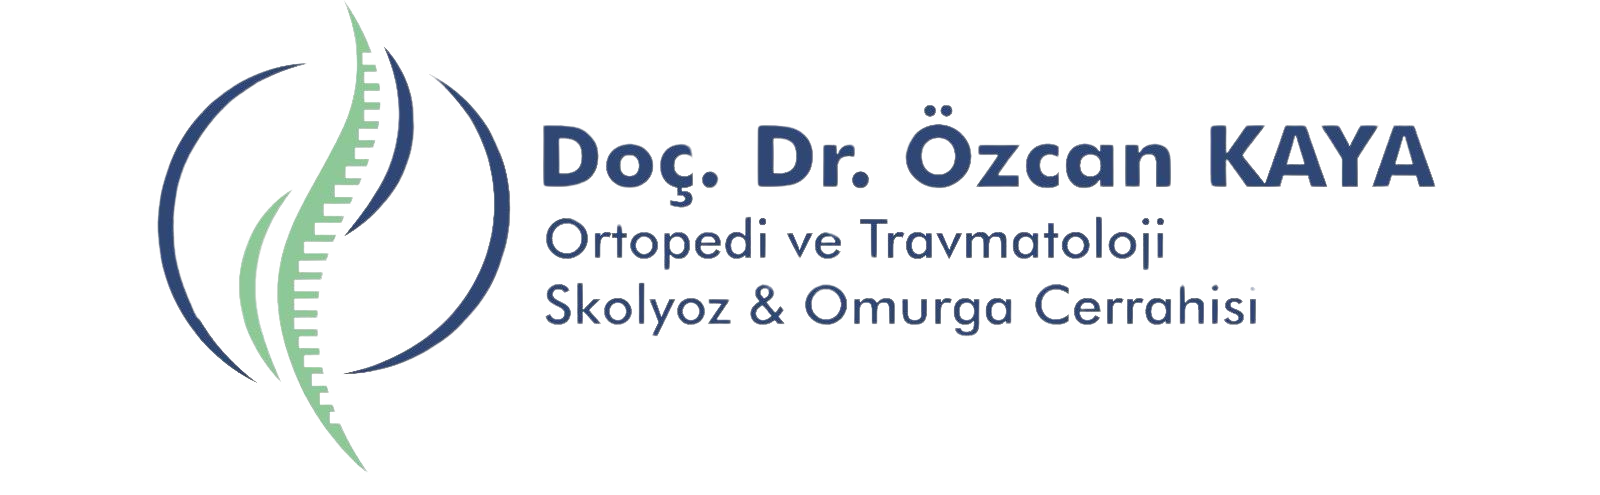 Doç.Dr. Özcan Kaya - 0530 257 73 77